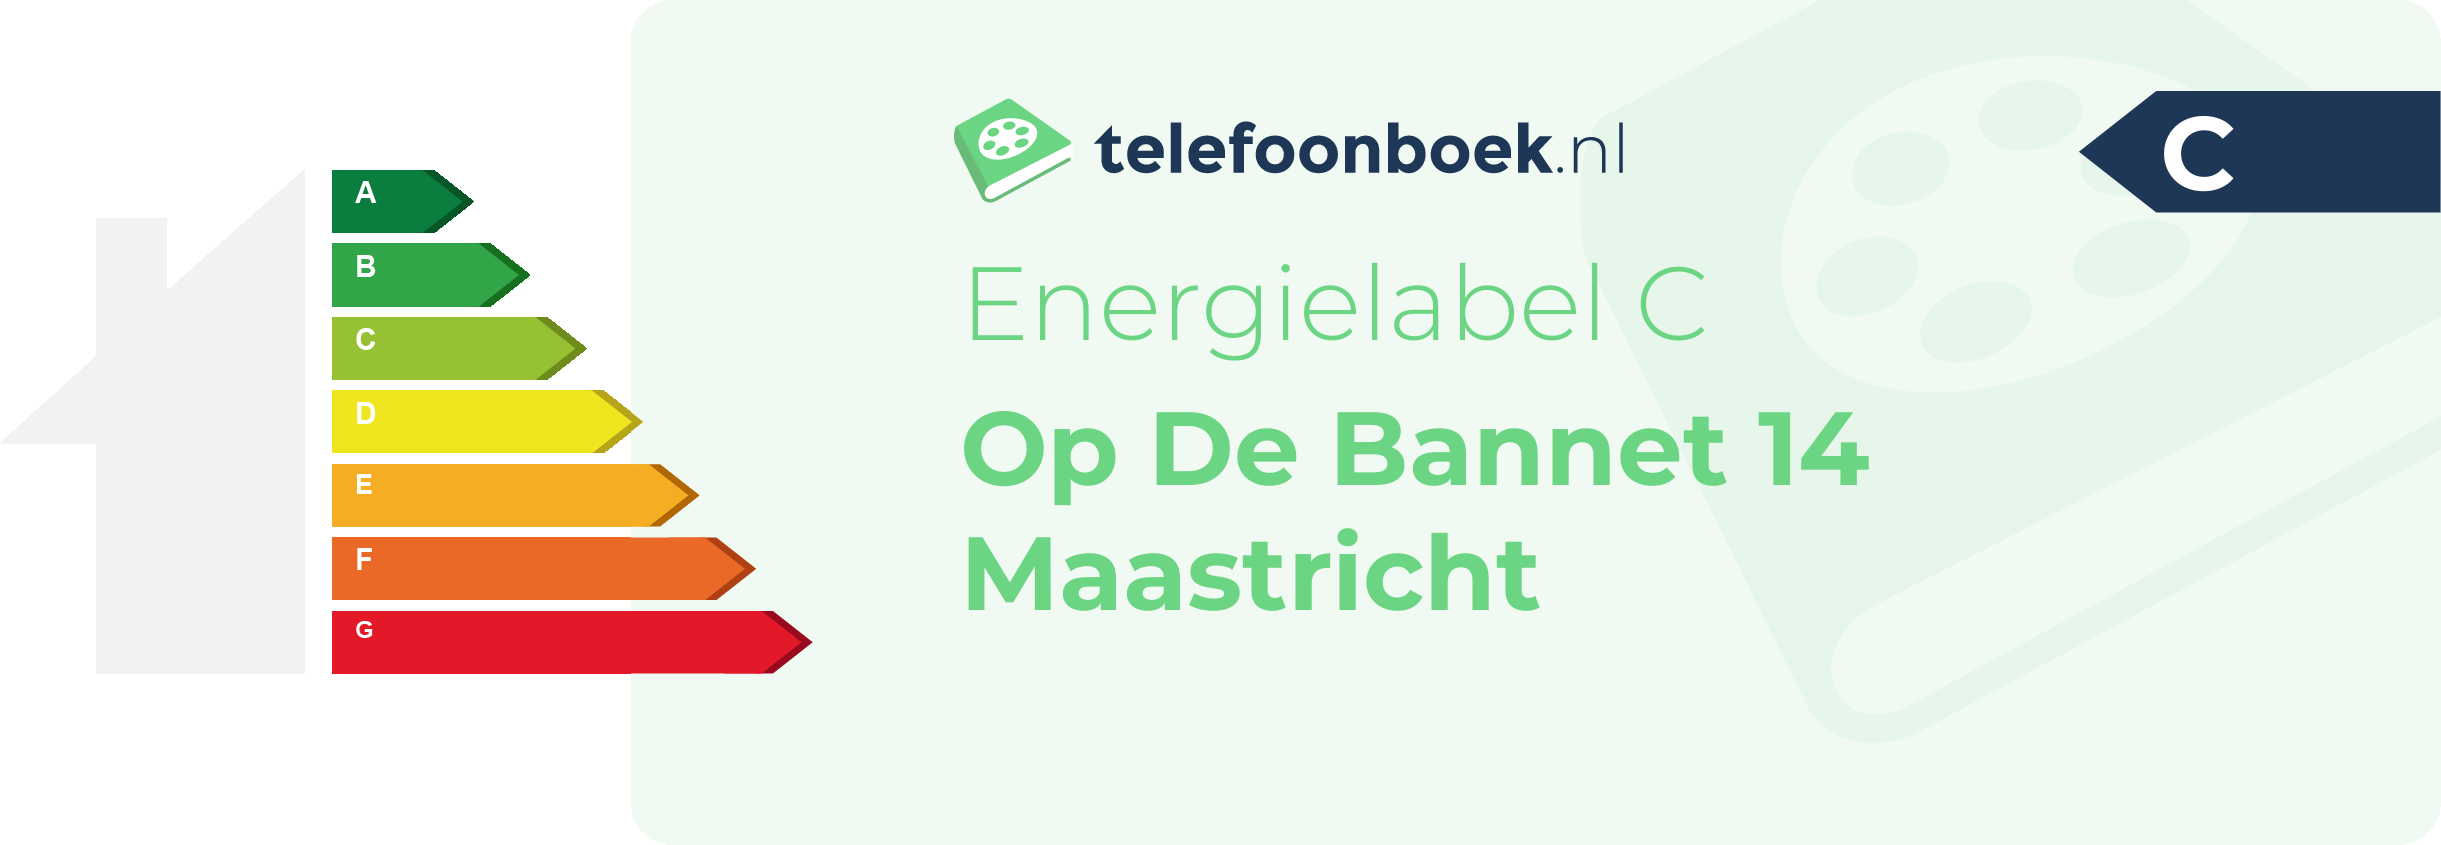 Energielabel Op De Bannet 14 Maastricht